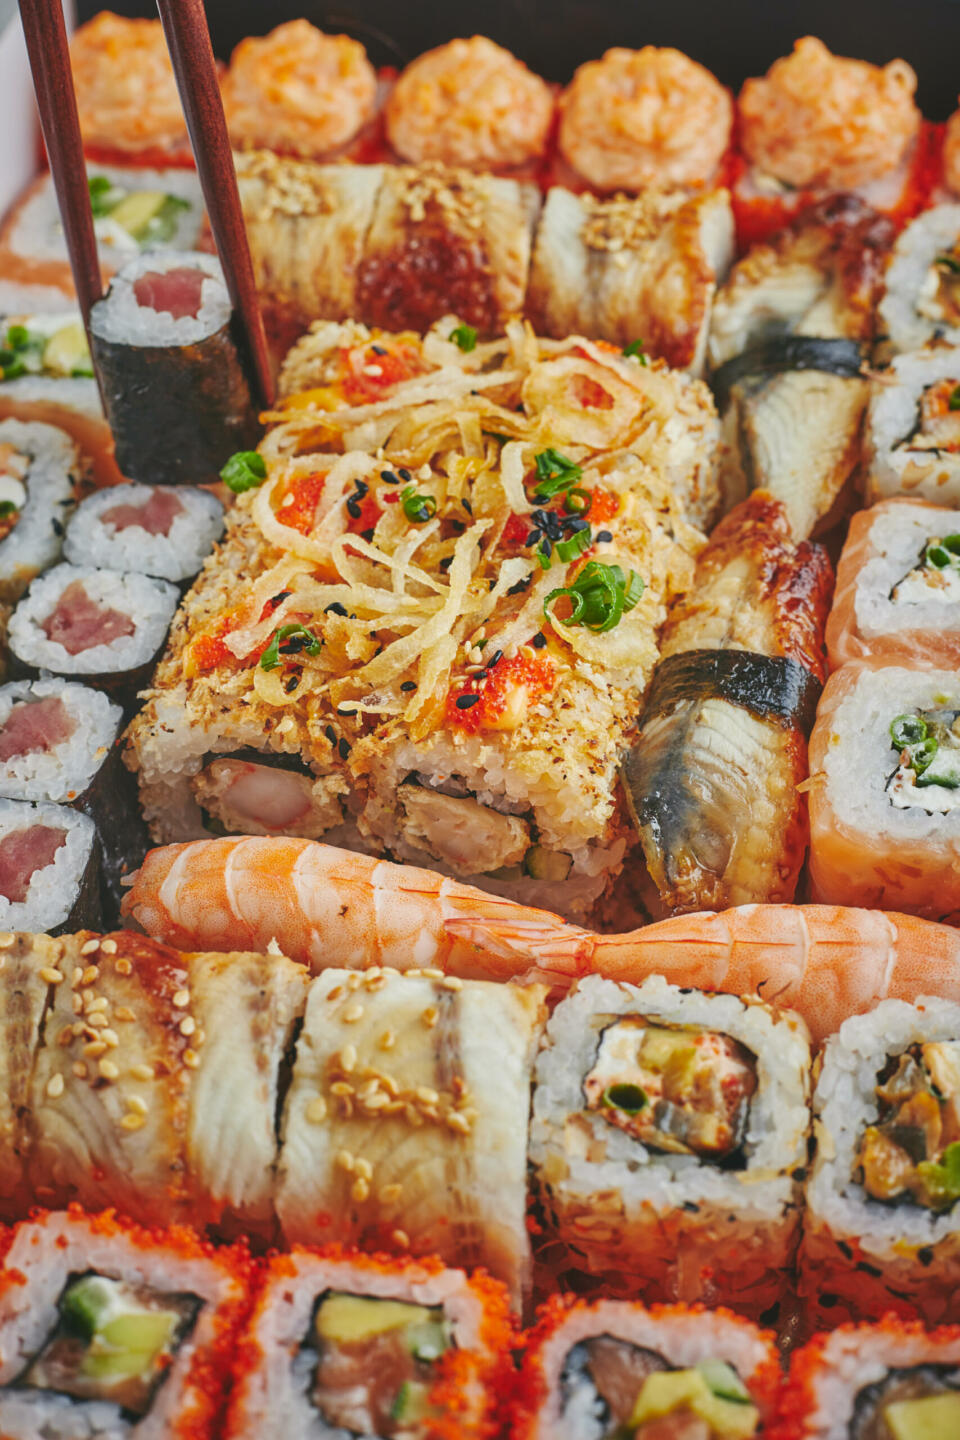 суши в японии настоящие